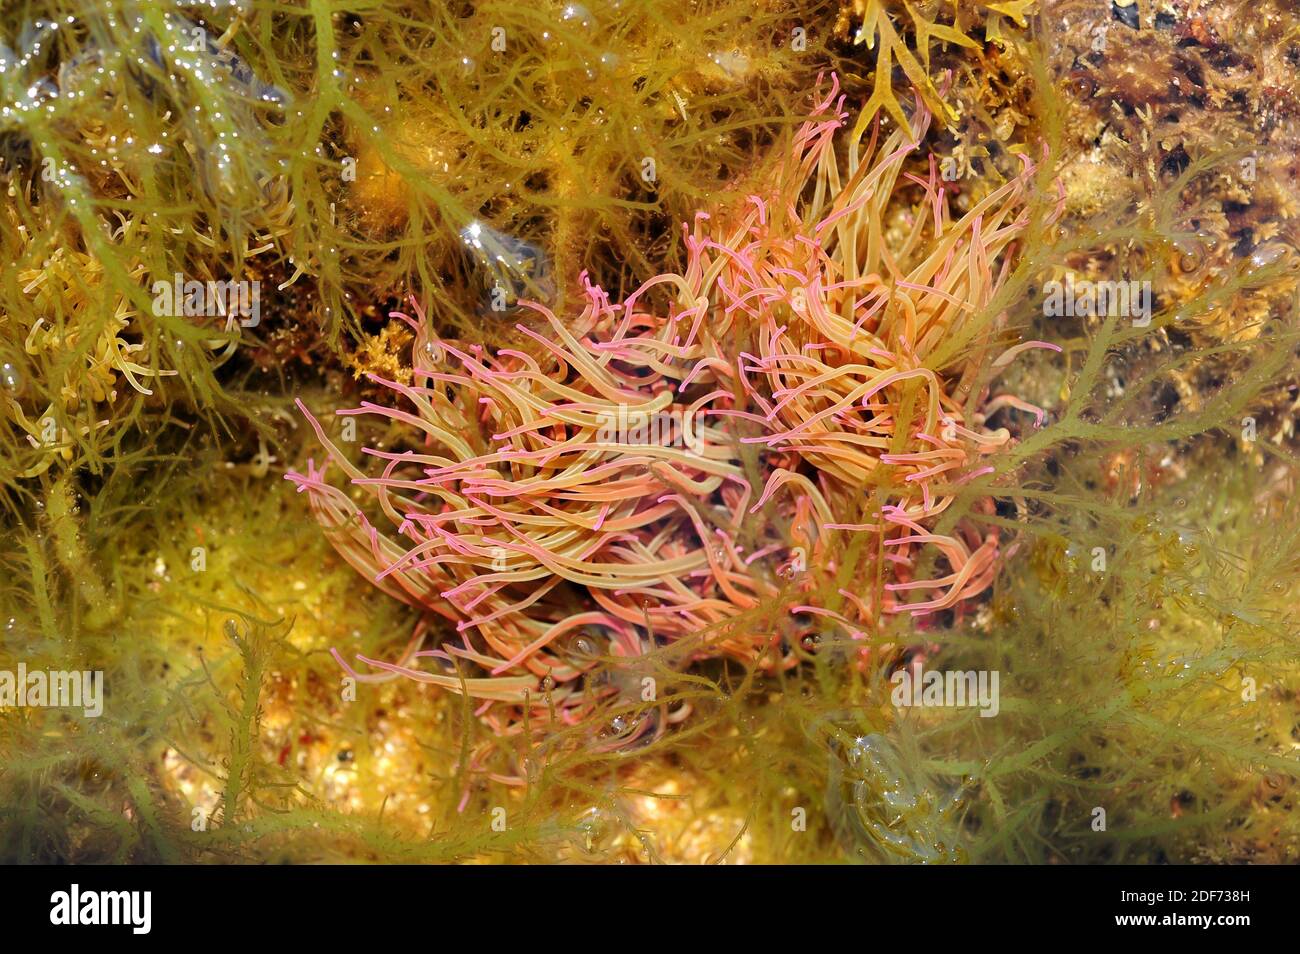 L'anemone marino comune o mediterraneo (Anemonia sulcata) ha circa 200 tentacoli che puntano per difendere e catturare la loro preda. Questa foto è stata scattata in Cap Foto Stock